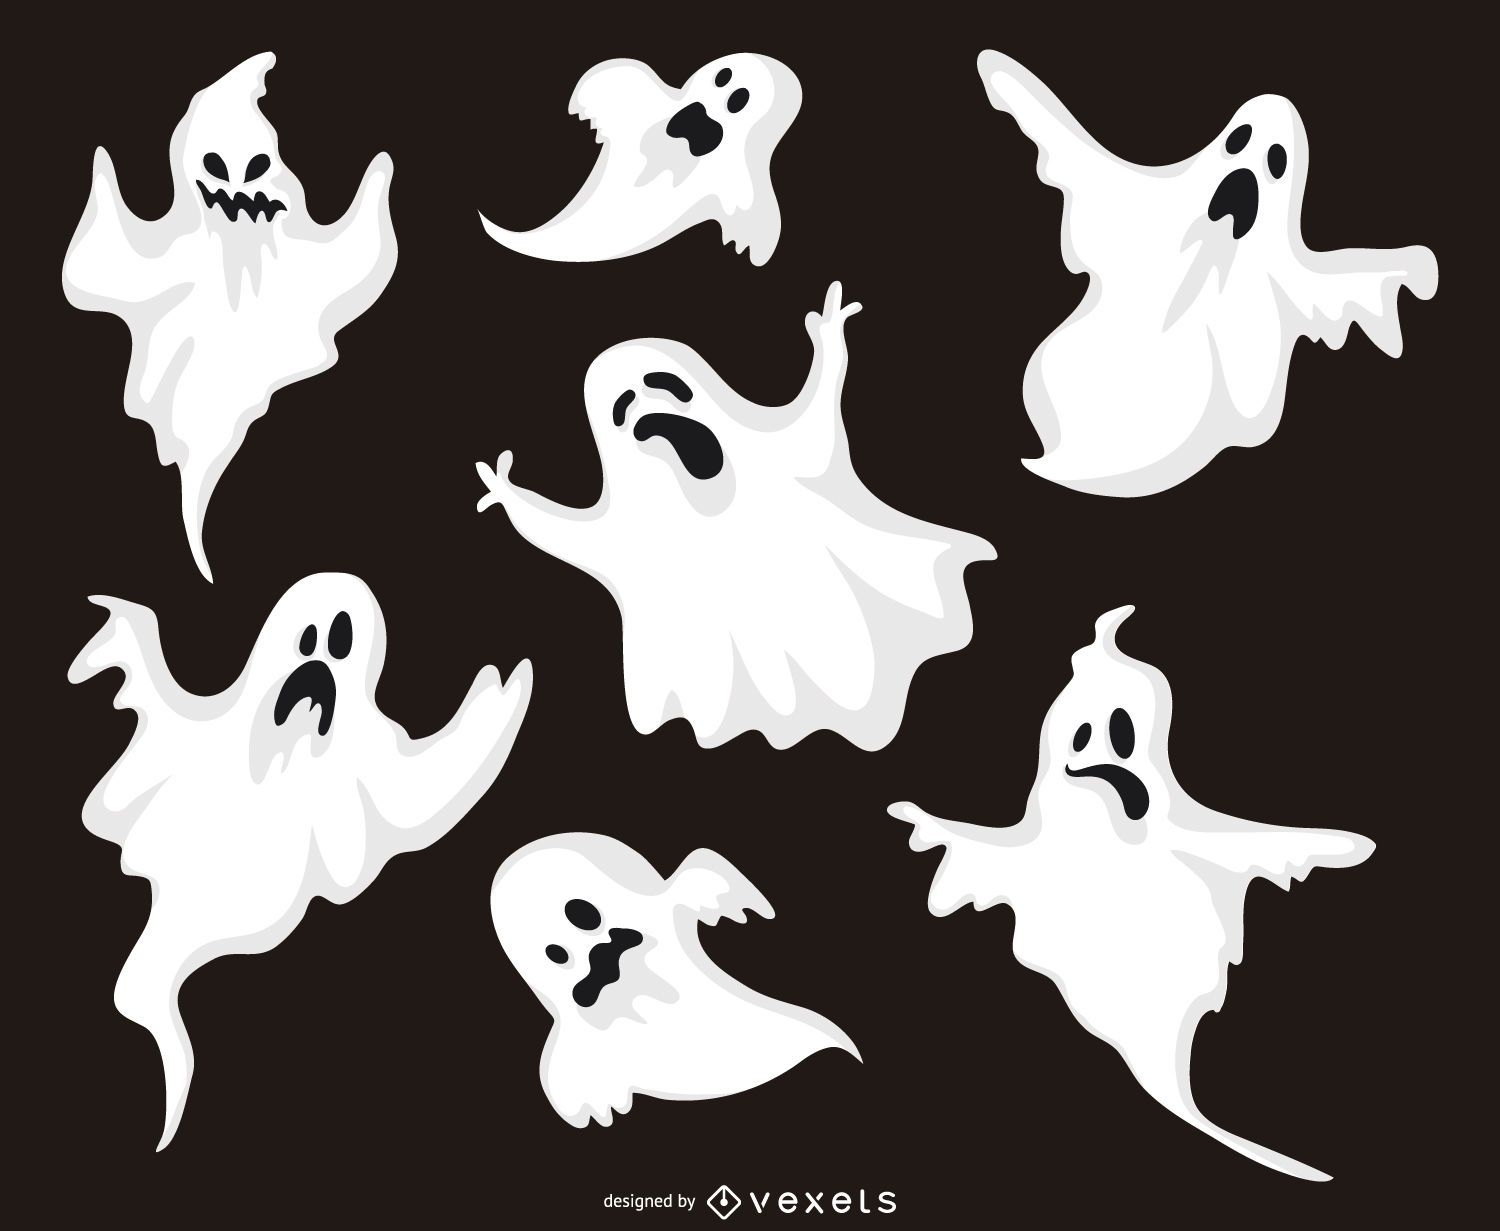 Halloween Ghost Illustrations Set - Vector Download